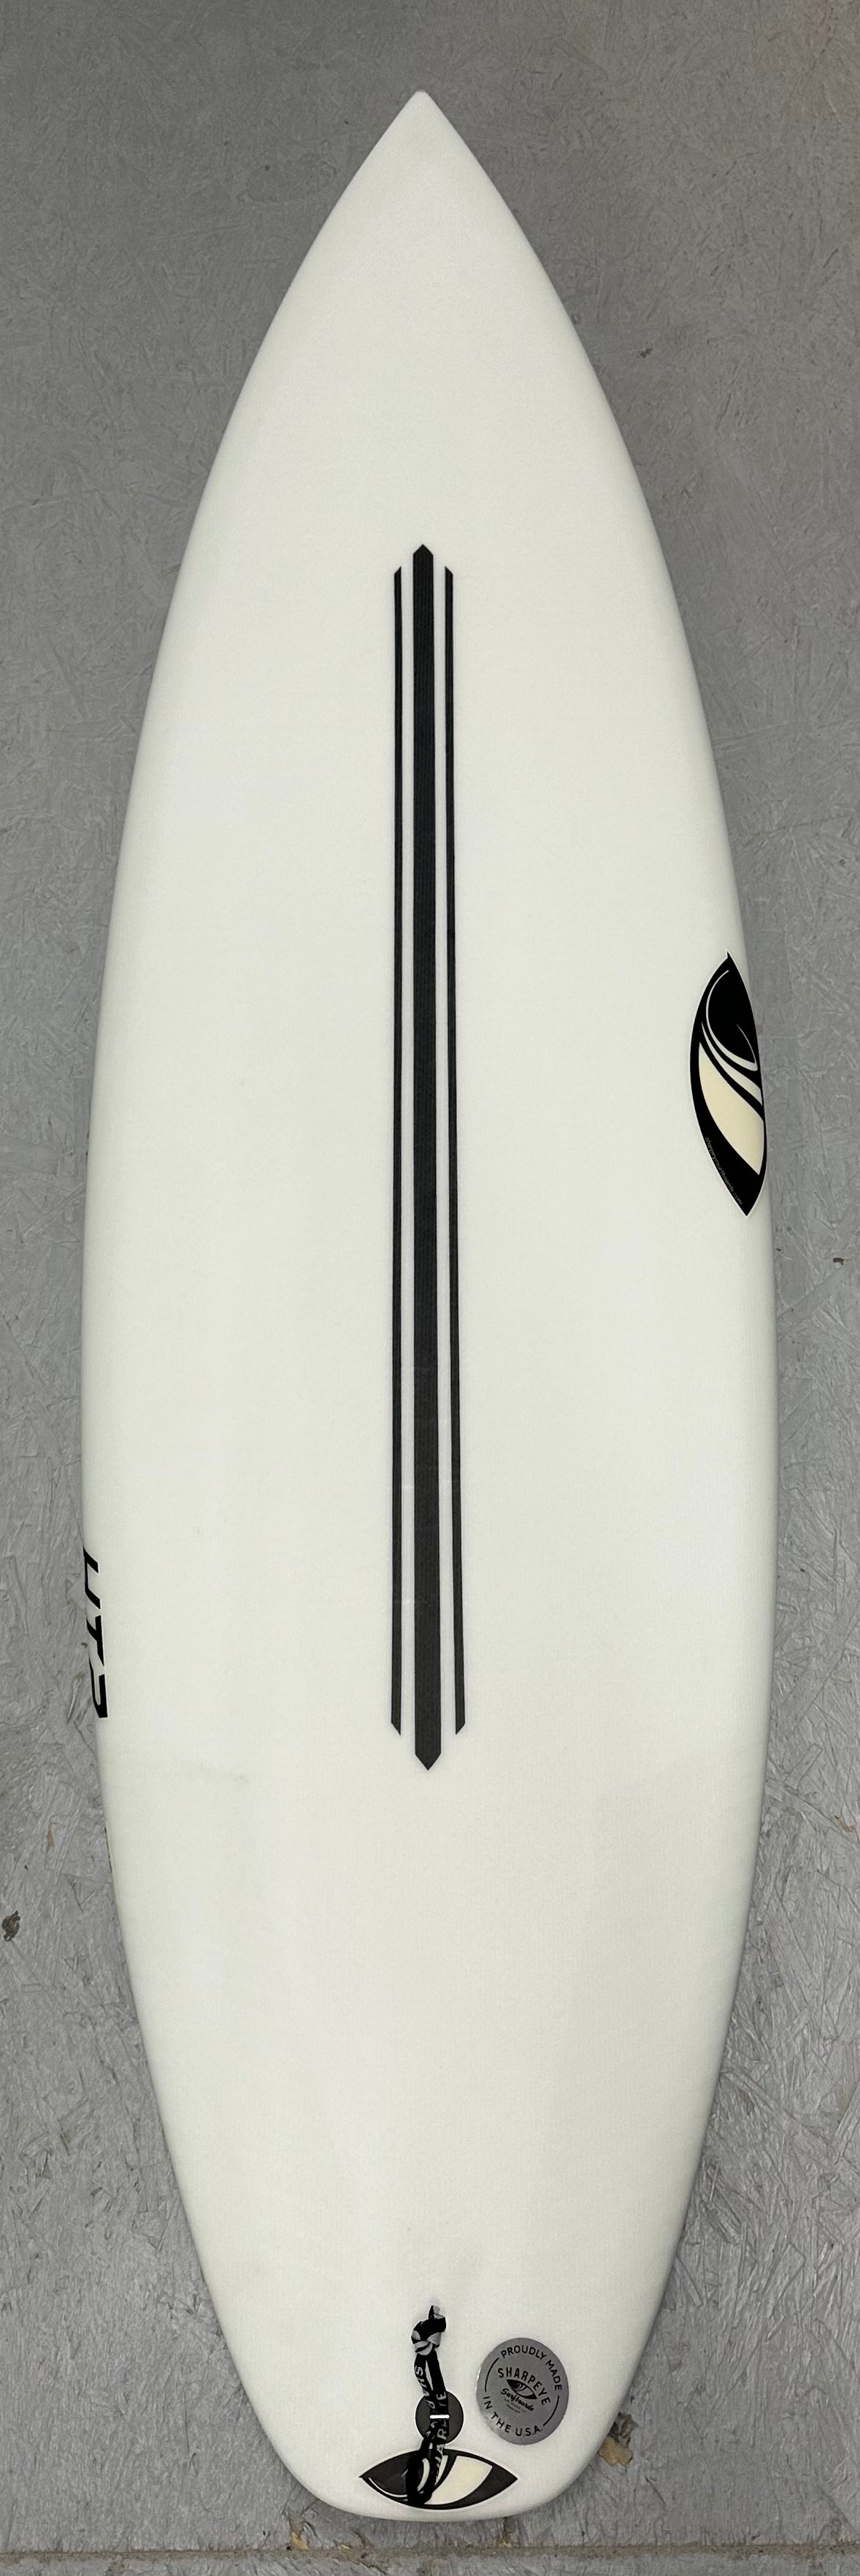 通販セール送料無料！美USED 本国アメリカ製 シャープアイサーフボード HT2.5 モデル 5’8” 24.4L SHARPEYE Surfboards 5.8フィート～